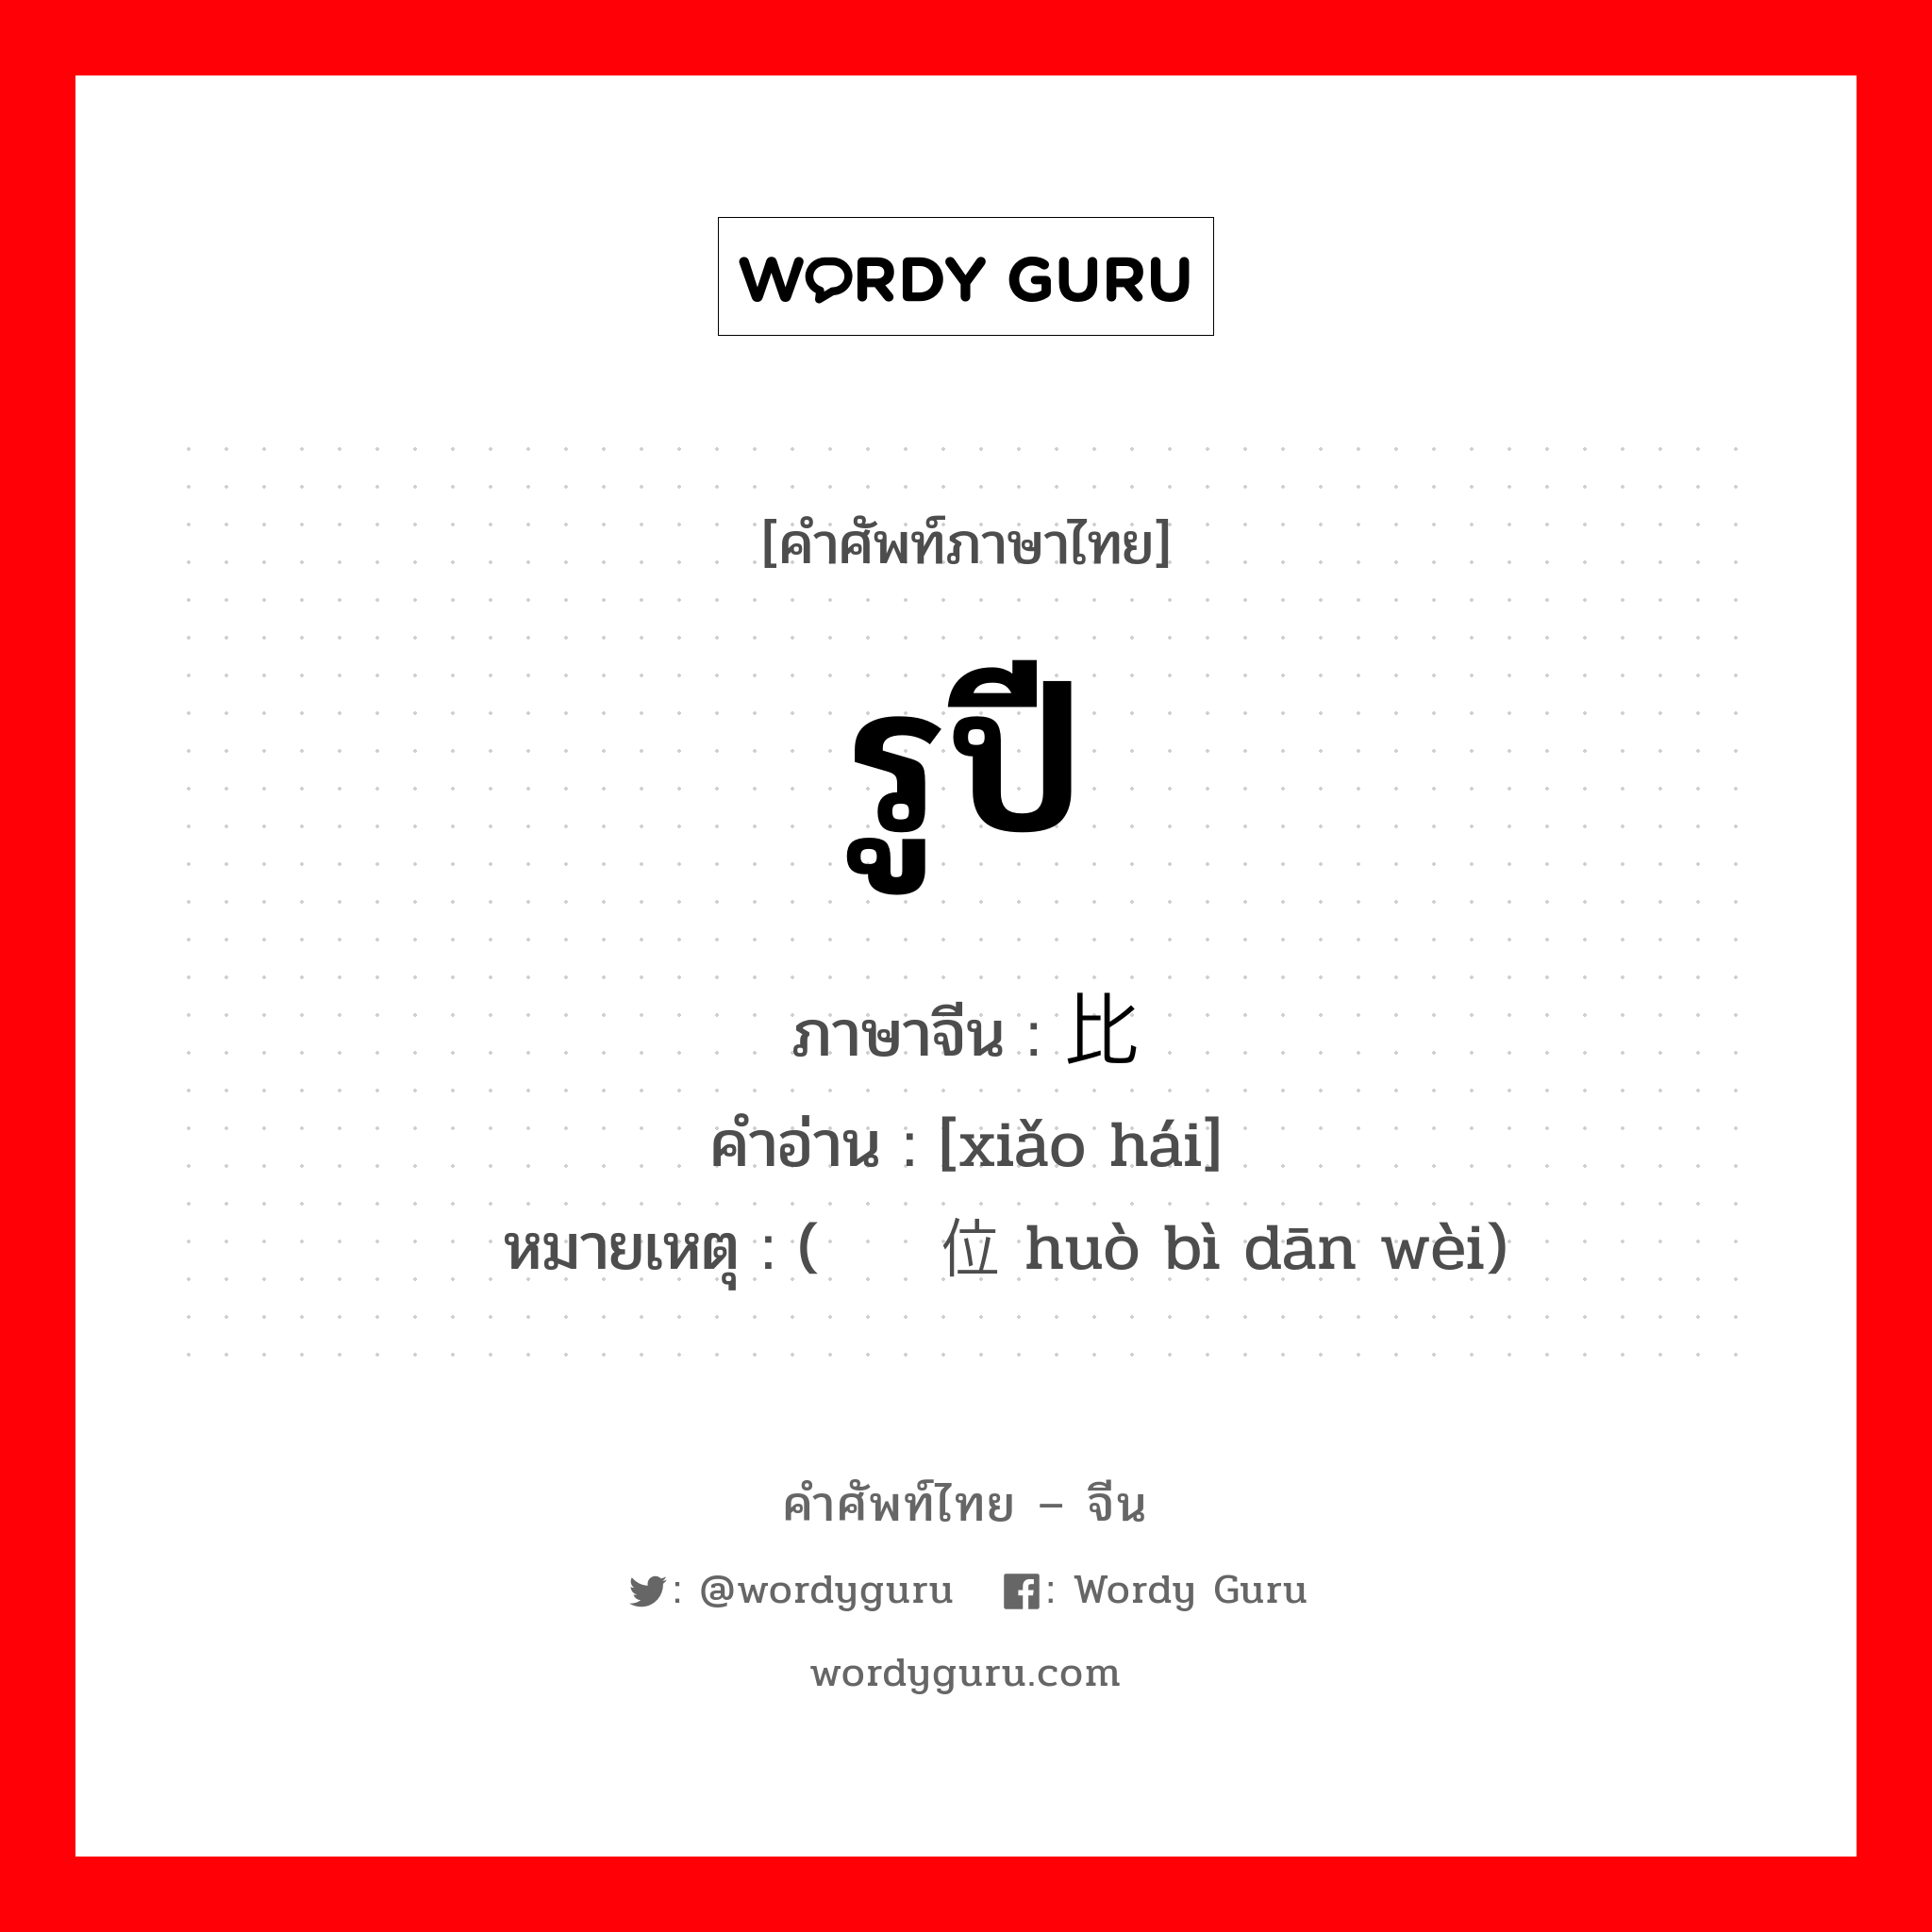 รูปี ภาษาจีนคืออะไร, คำศัพท์ภาษาไทย - จีน รูปี ภาษาจีน 卢比 คำอ่าน [xiǎo hái] หมายเหตุ (货币单位 huò bì dān wèi)